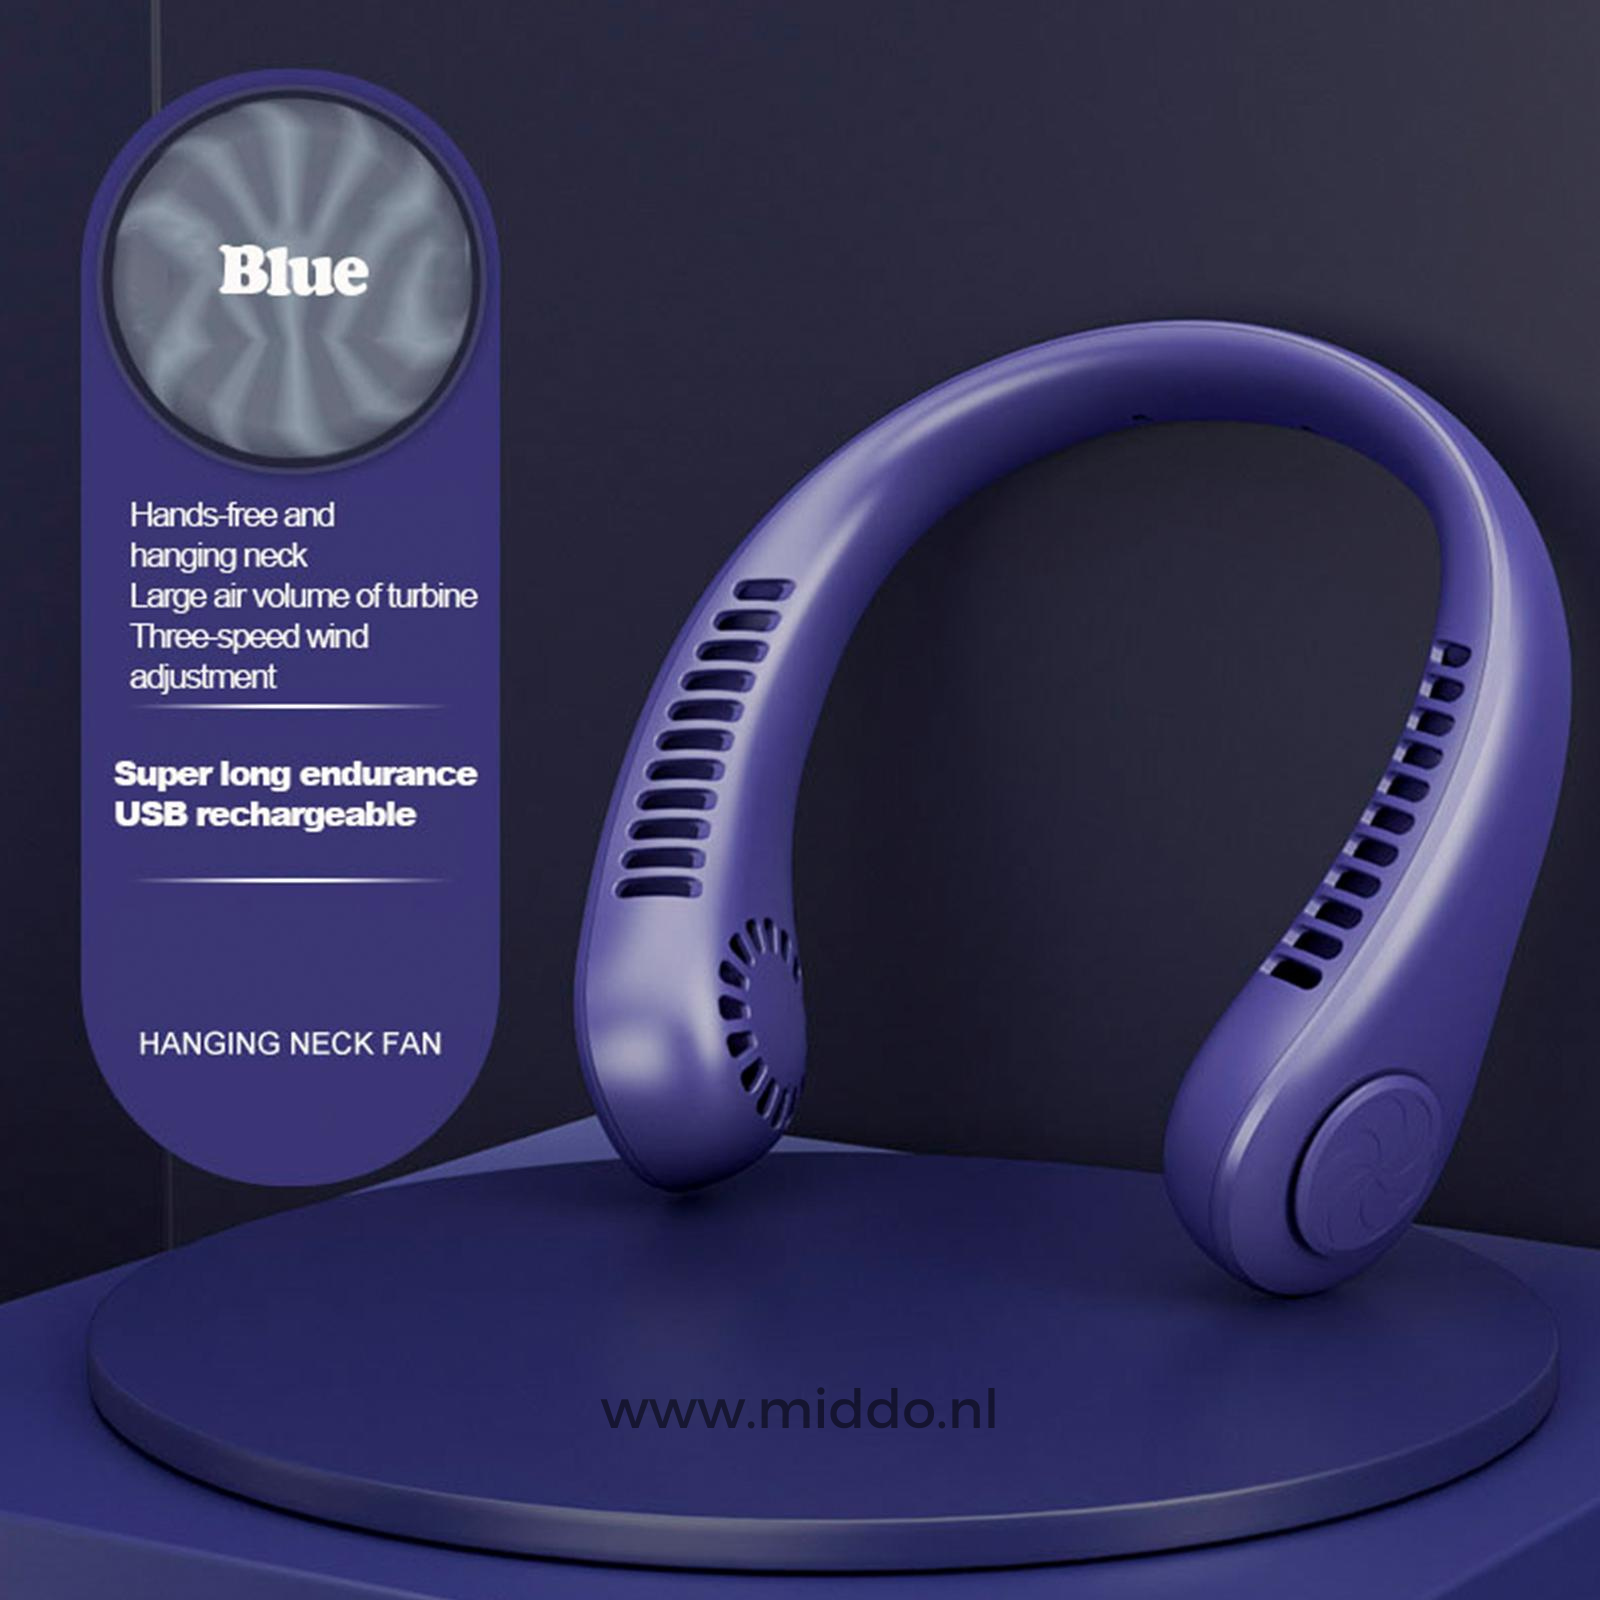 Blauwe NekFan met handsfree ontwerp en USB oplaadbaarheid